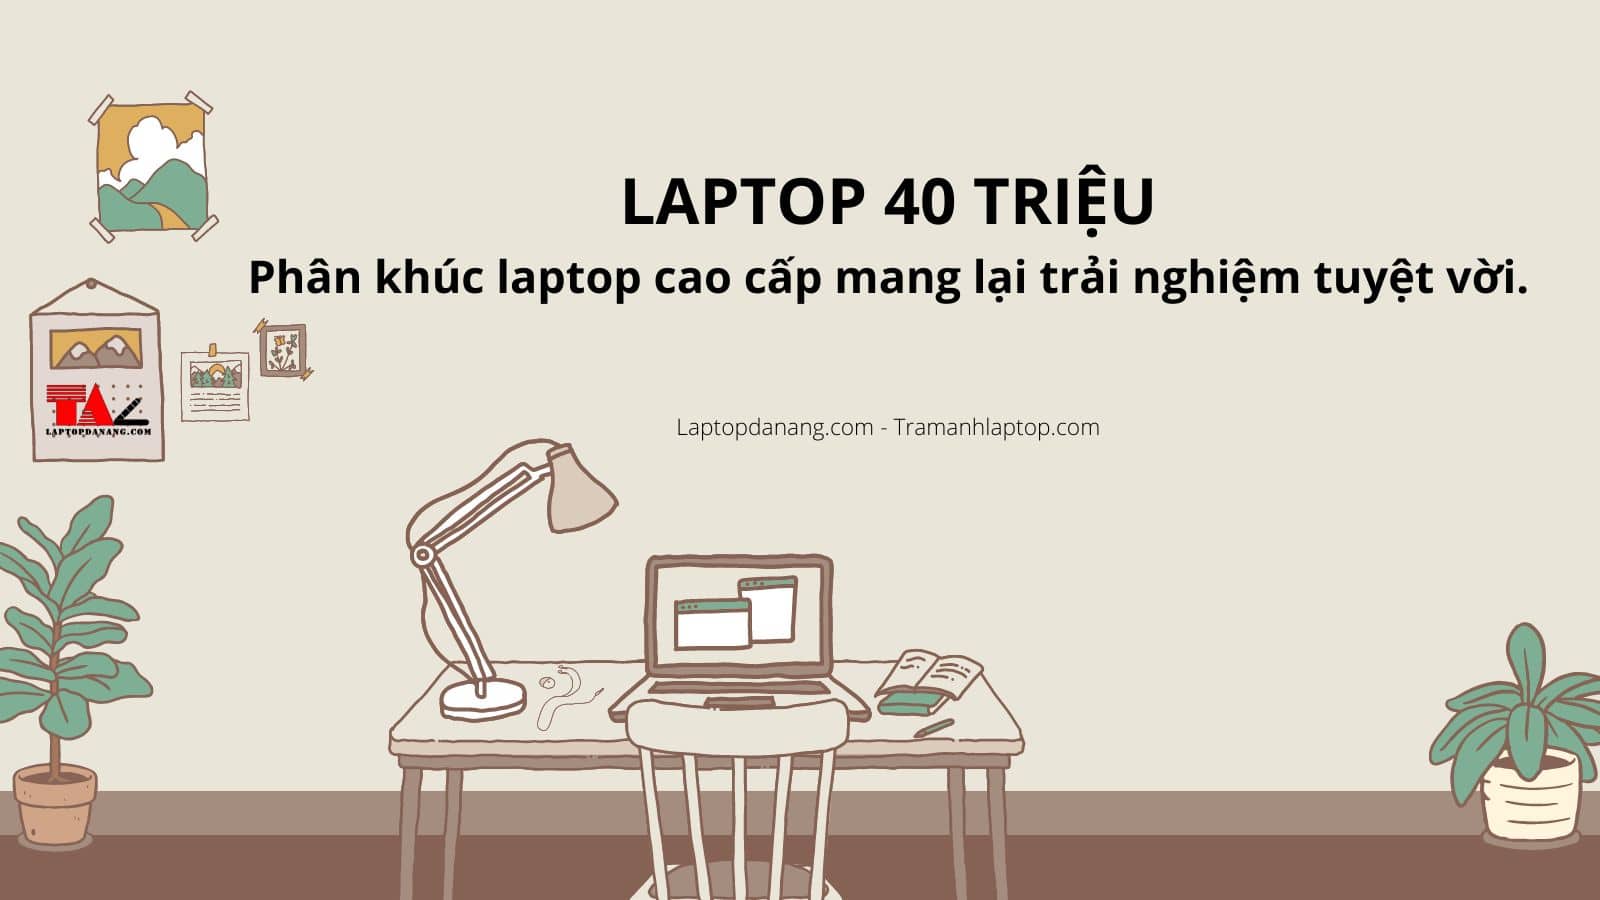 Laptop 40 triệu - Phân khúc laptop cao cấp mang lại trải nghiệm tuyệt vời.